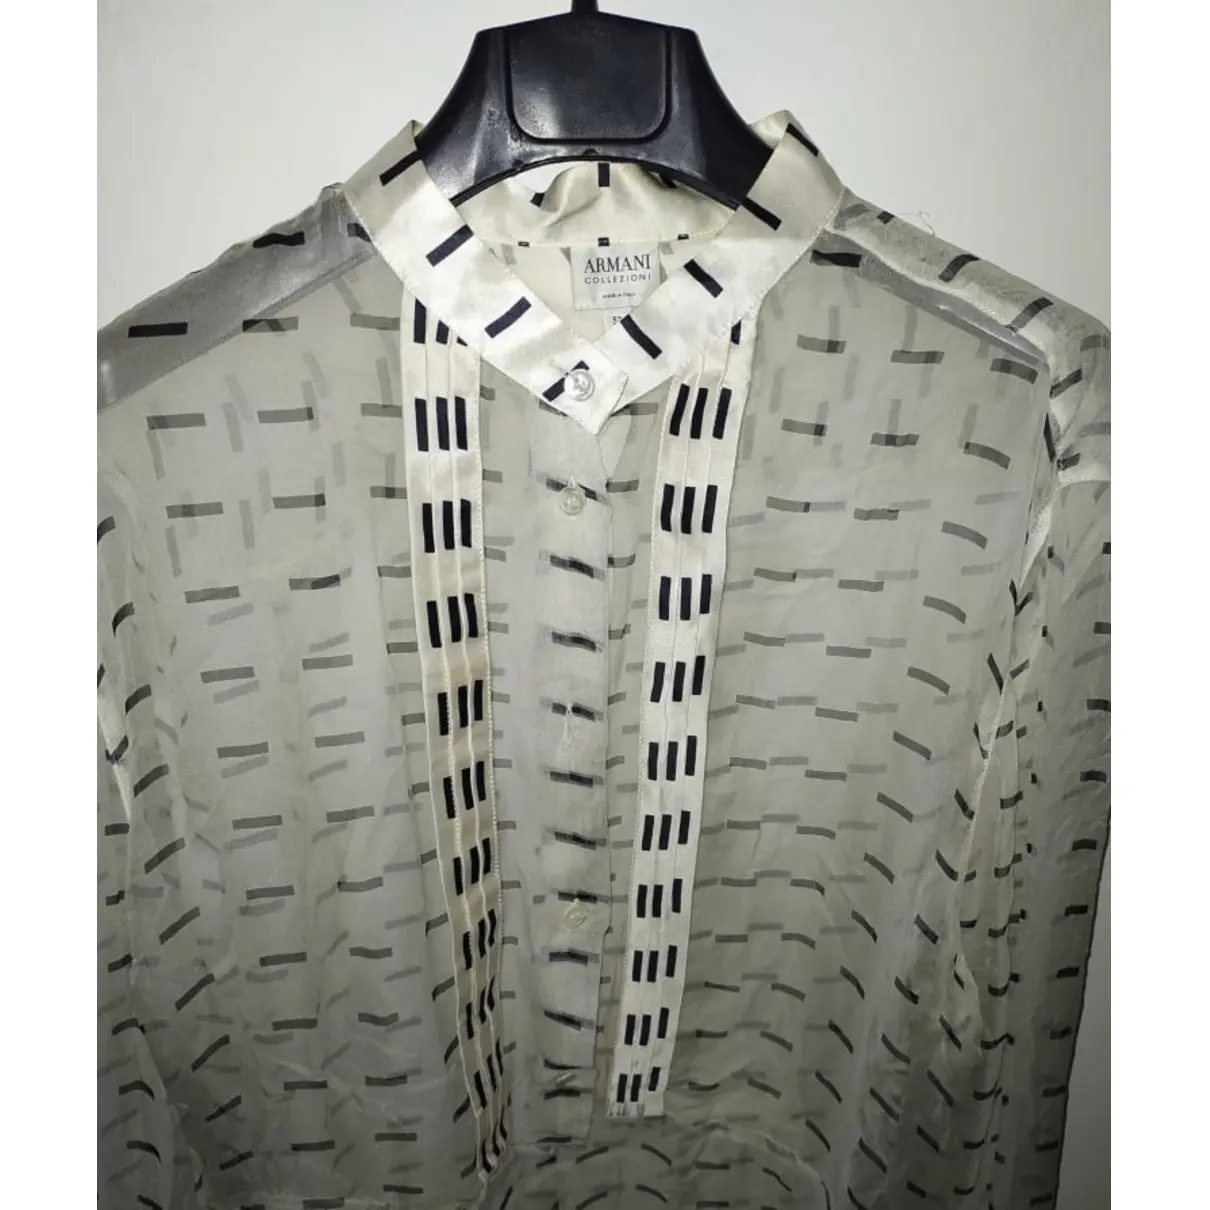 Buy Armani Collezioni Silk tunic online